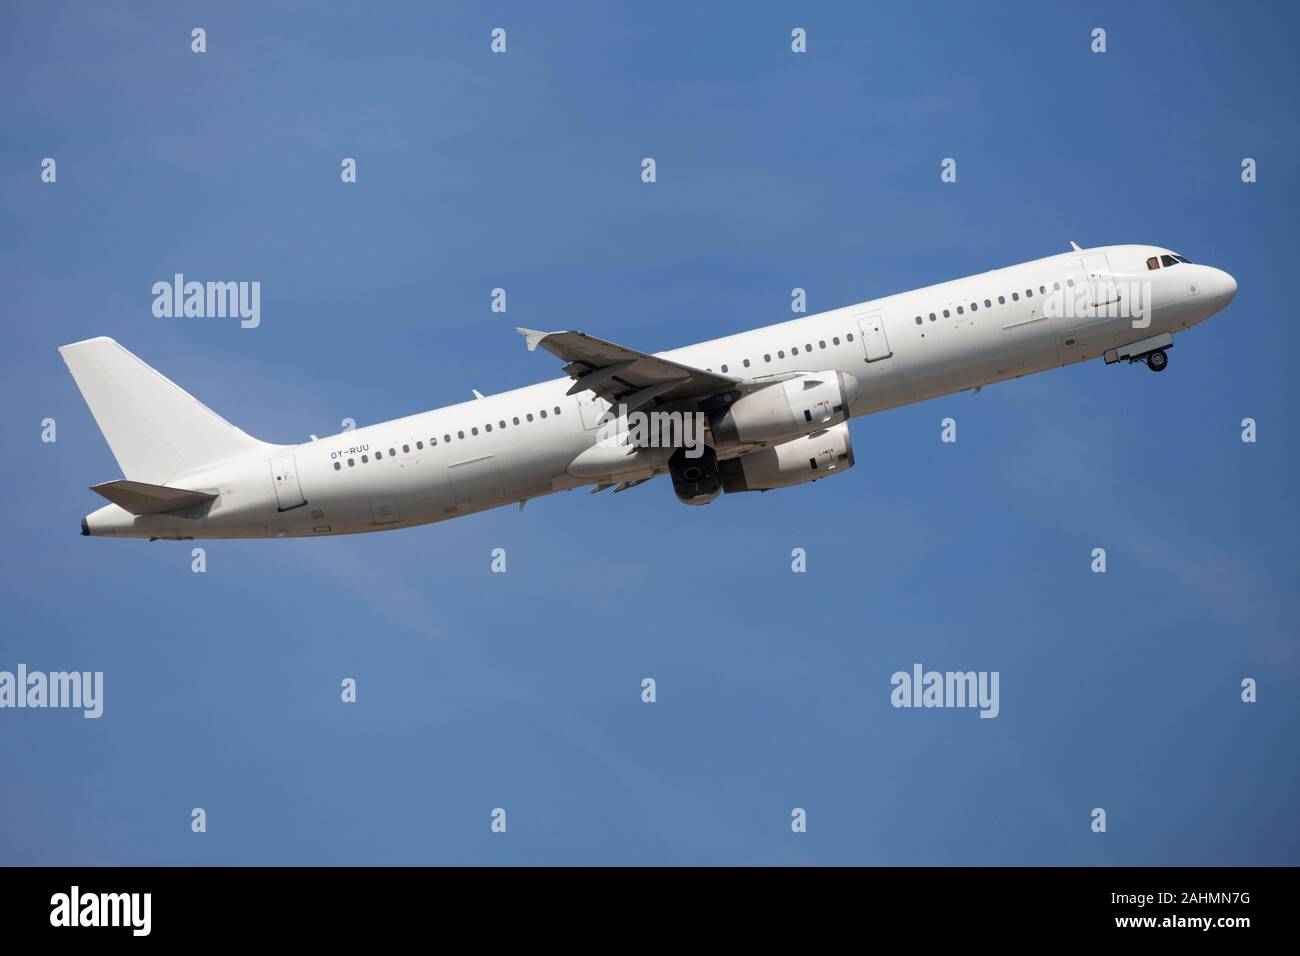 Barcellona, Spagna - Agosto 23, 2019: Danese Trasporti aerei Airbus A321 senza livrea il decollo dall'Aeroporto El Prat di Barcellona, Spagna. Foto Stock